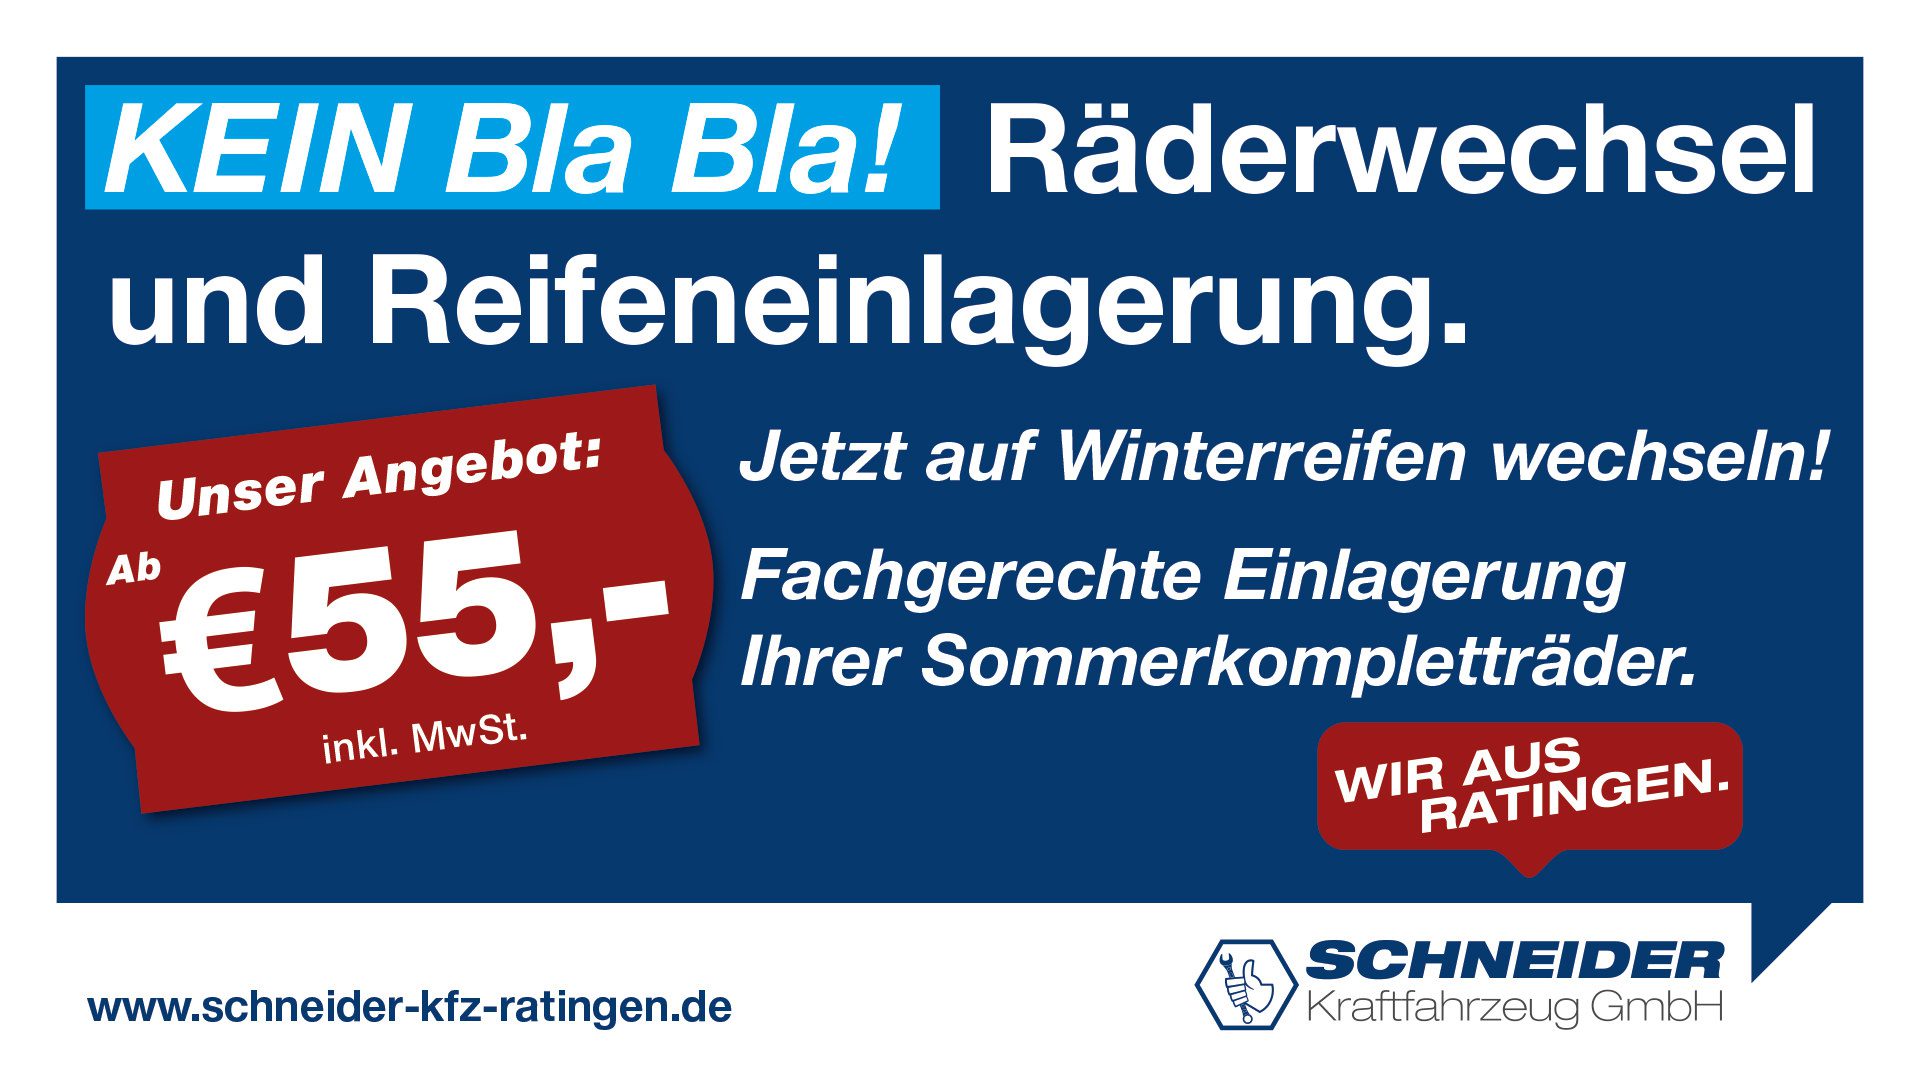 Schneider Kfz GmbH - Winterreifen -Räderwechsel-Reifeneinlagerung